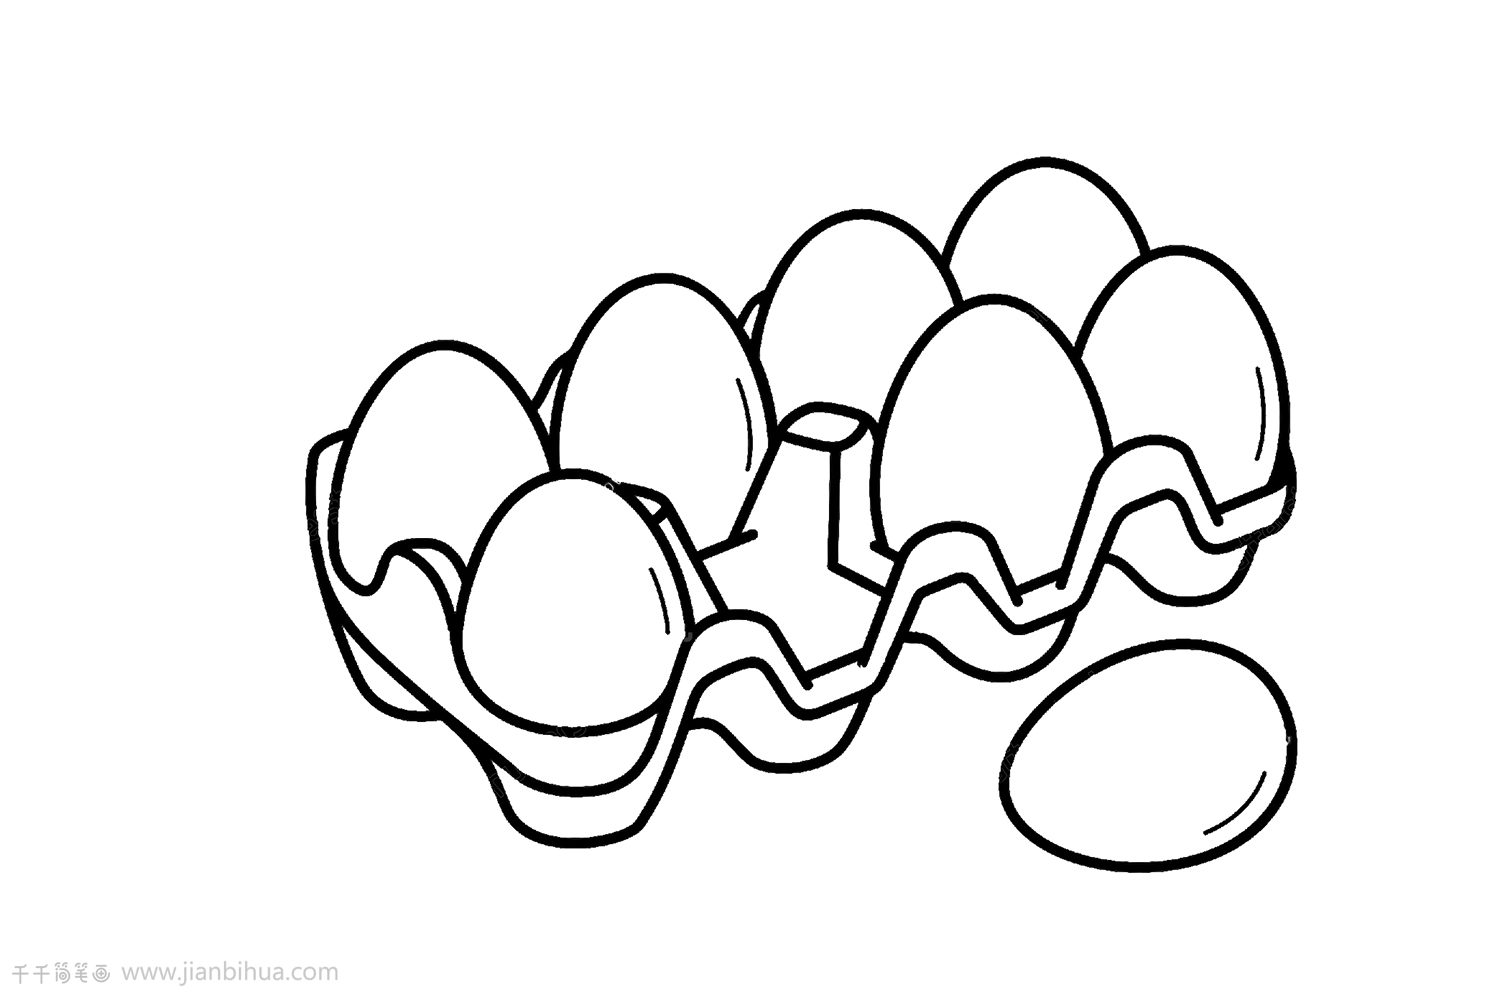 100种鸡蛋绘画diy教程图解 咿咿呀呀儿童手工网